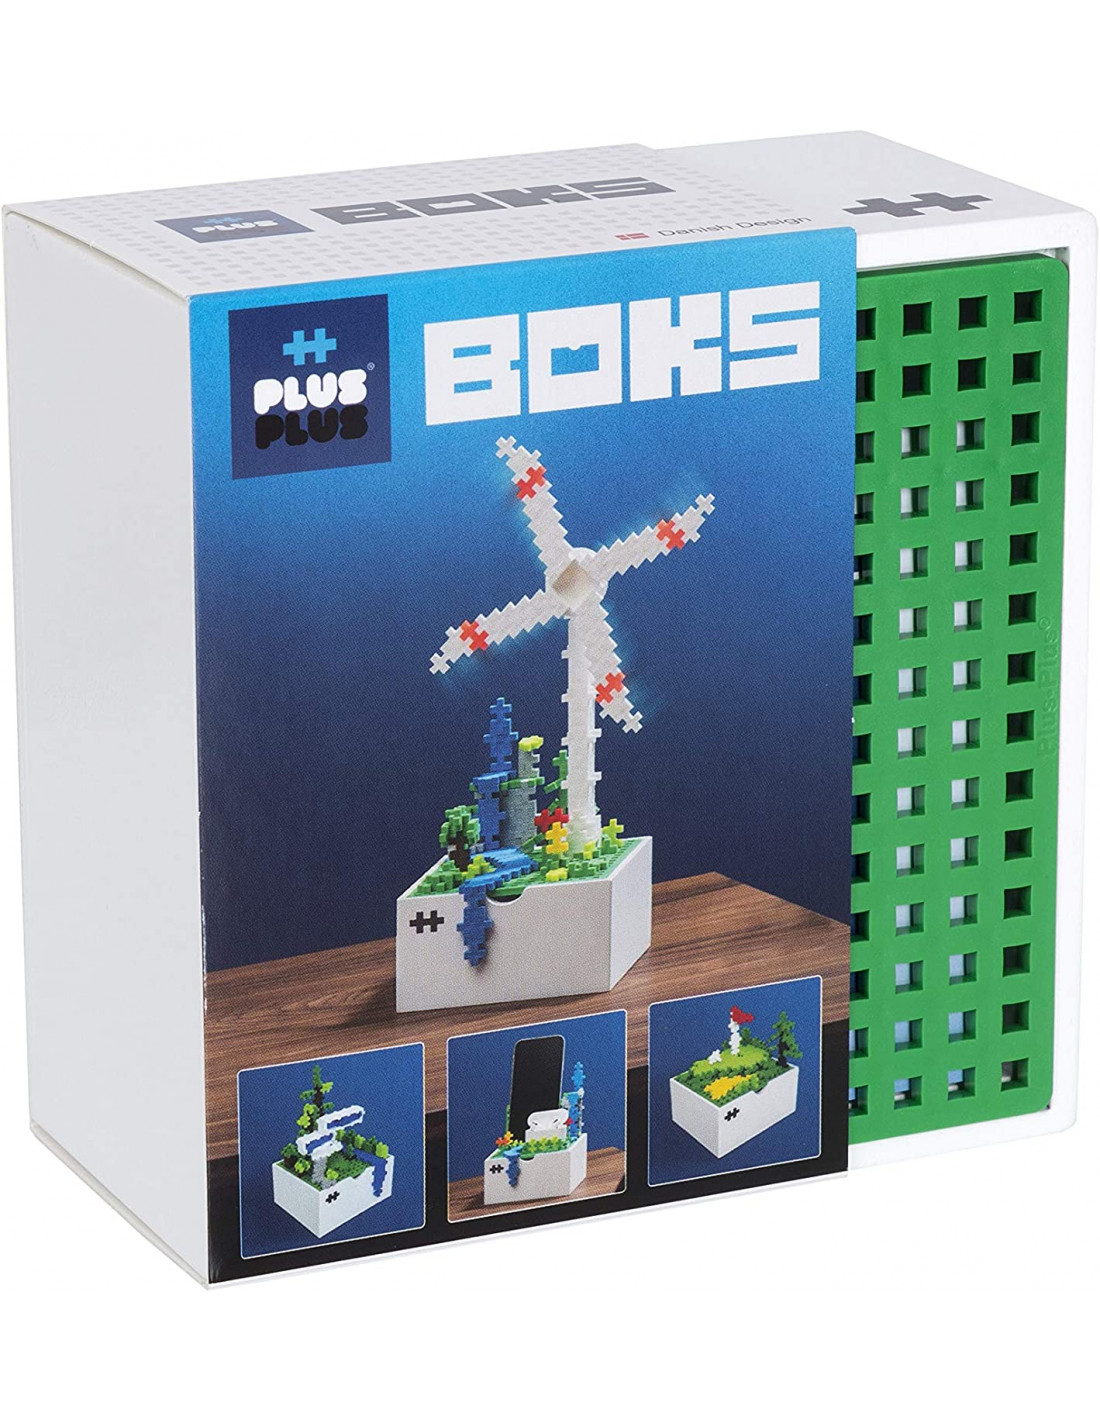 Plus Plus robots Box mini basic 170 pièces - jeu de construction